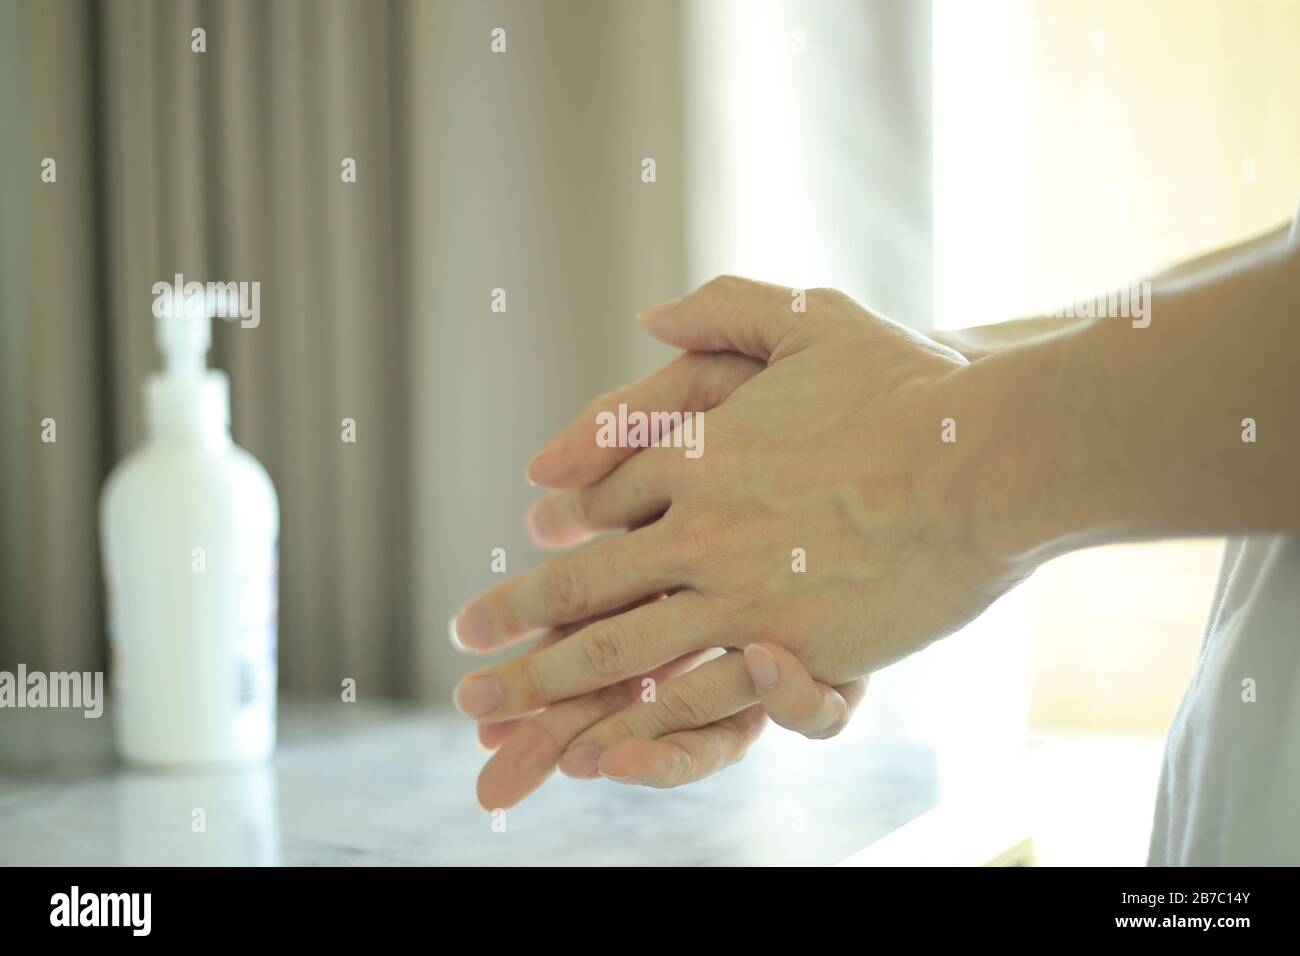 strofinare le mani con un gel di alcol per uccidere batteri e virus. lavarsi le mani con un disinfettante per respingere la malattia co-vid19. pulire le mani immediatamente wh Foto Stock